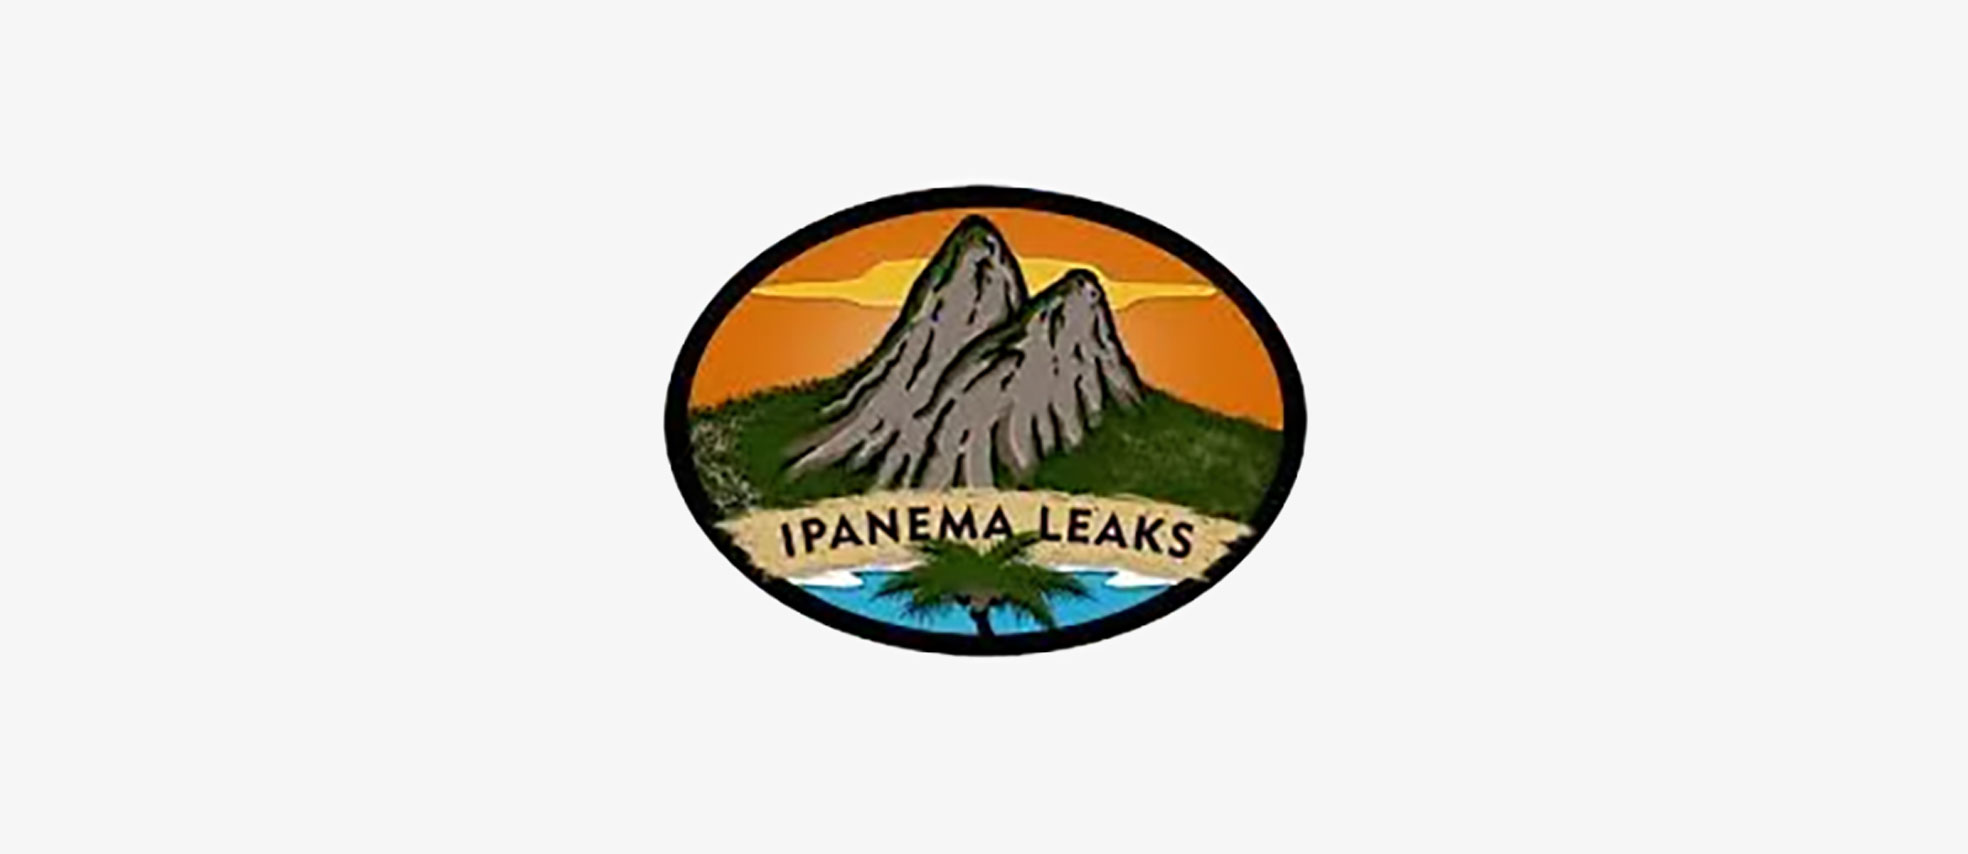 IPanema Leaks